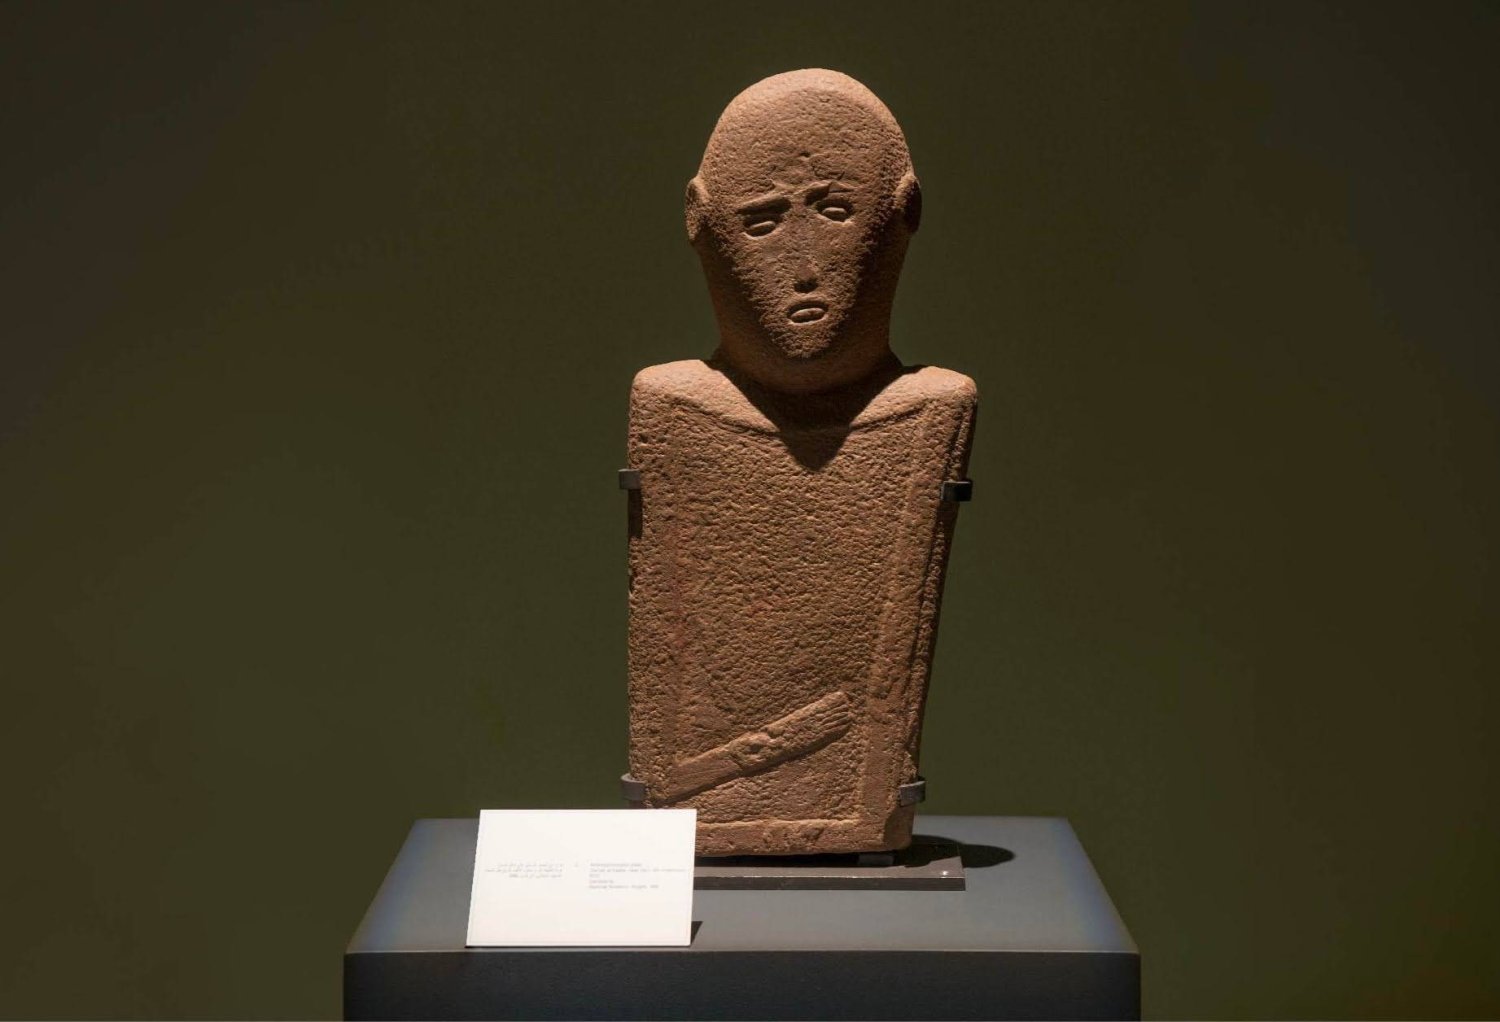 تُحف عالمية نادرة يعود تاريخها إلى آلاف الأعوام اكتُشفت في السعودية (وزارة الثقافة)